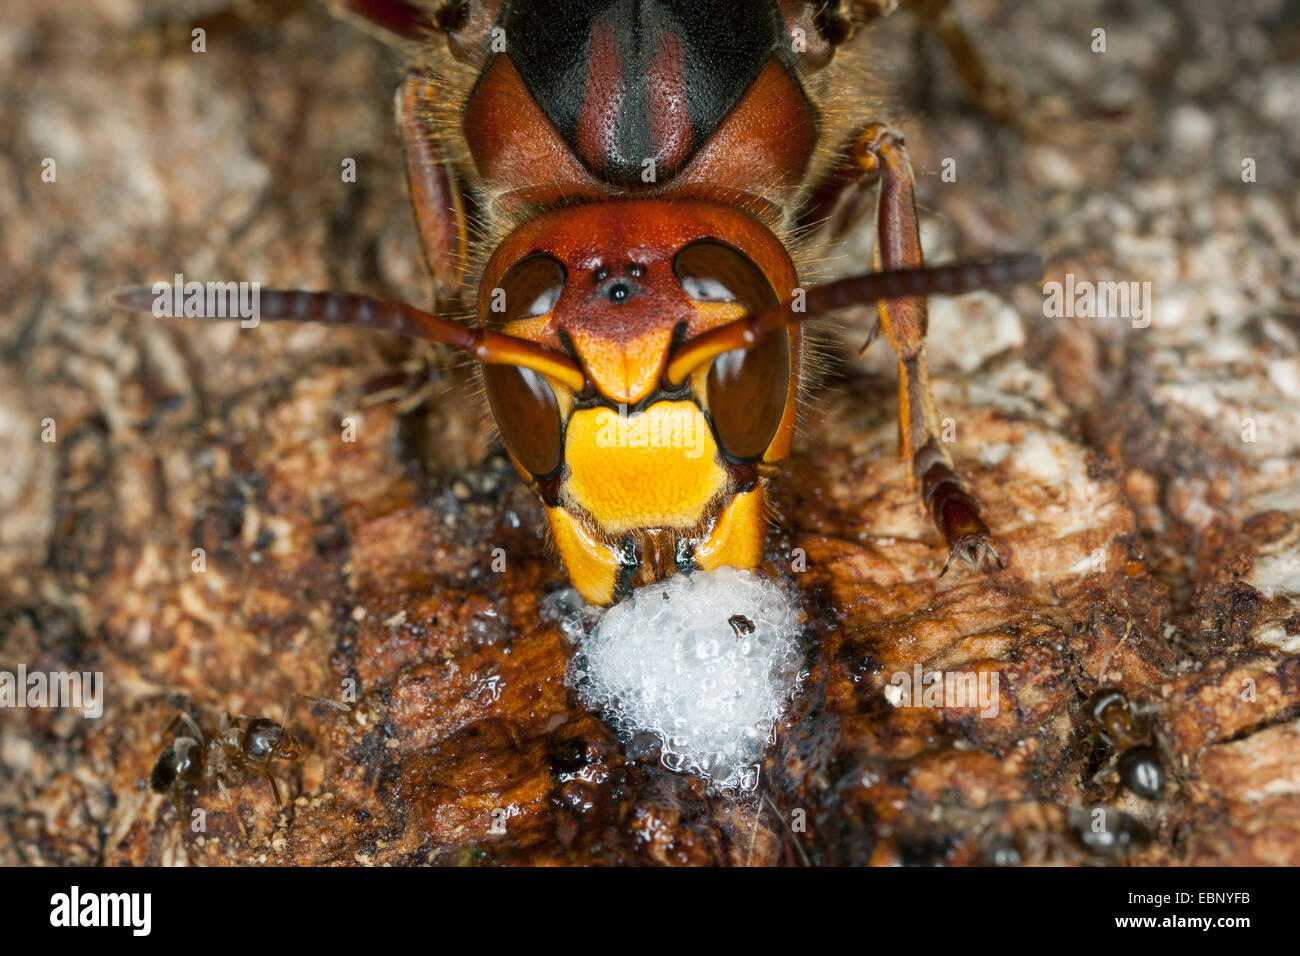 Hornet, brown, hornet hornet Européen (Vespa crabro), léchant le jus d'arbre à un tronc de chêne blessé, portrait, Allemagne Banque D'Images